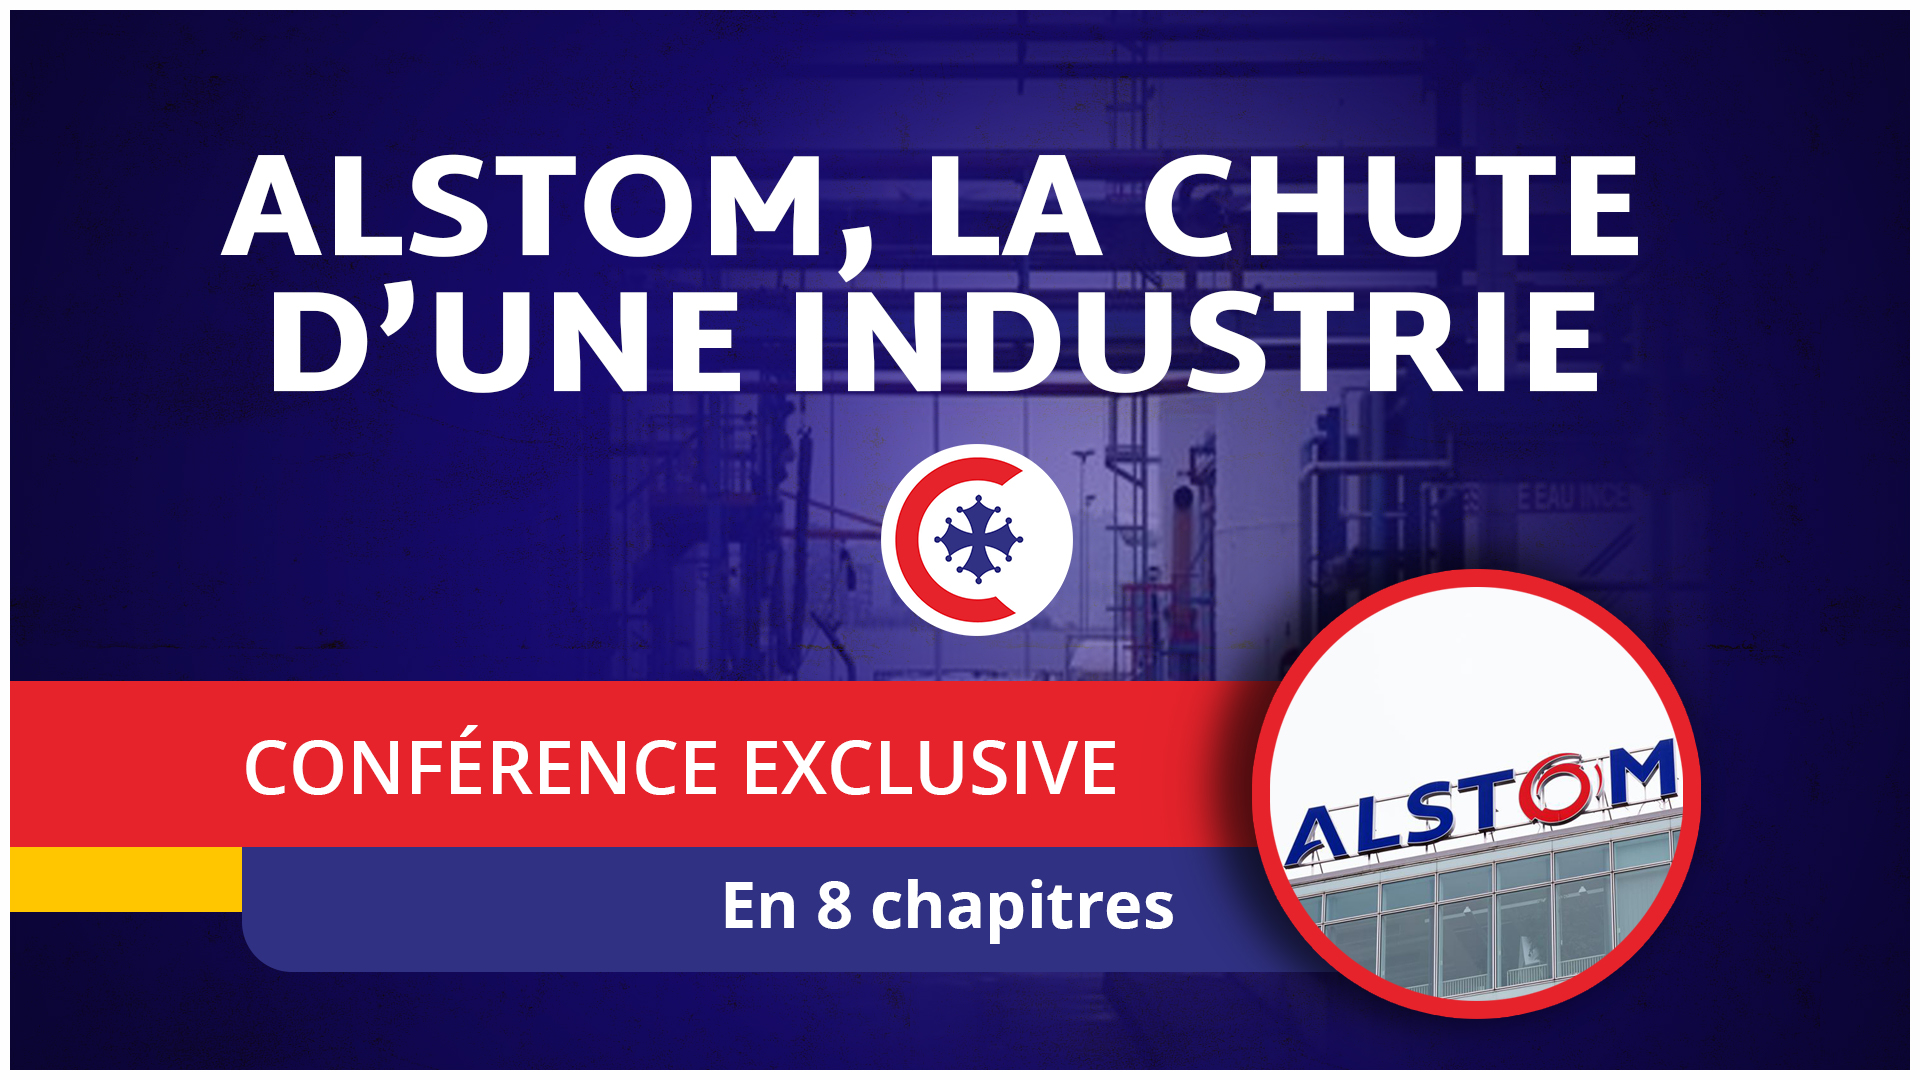 Alstom la chute d'une industrie